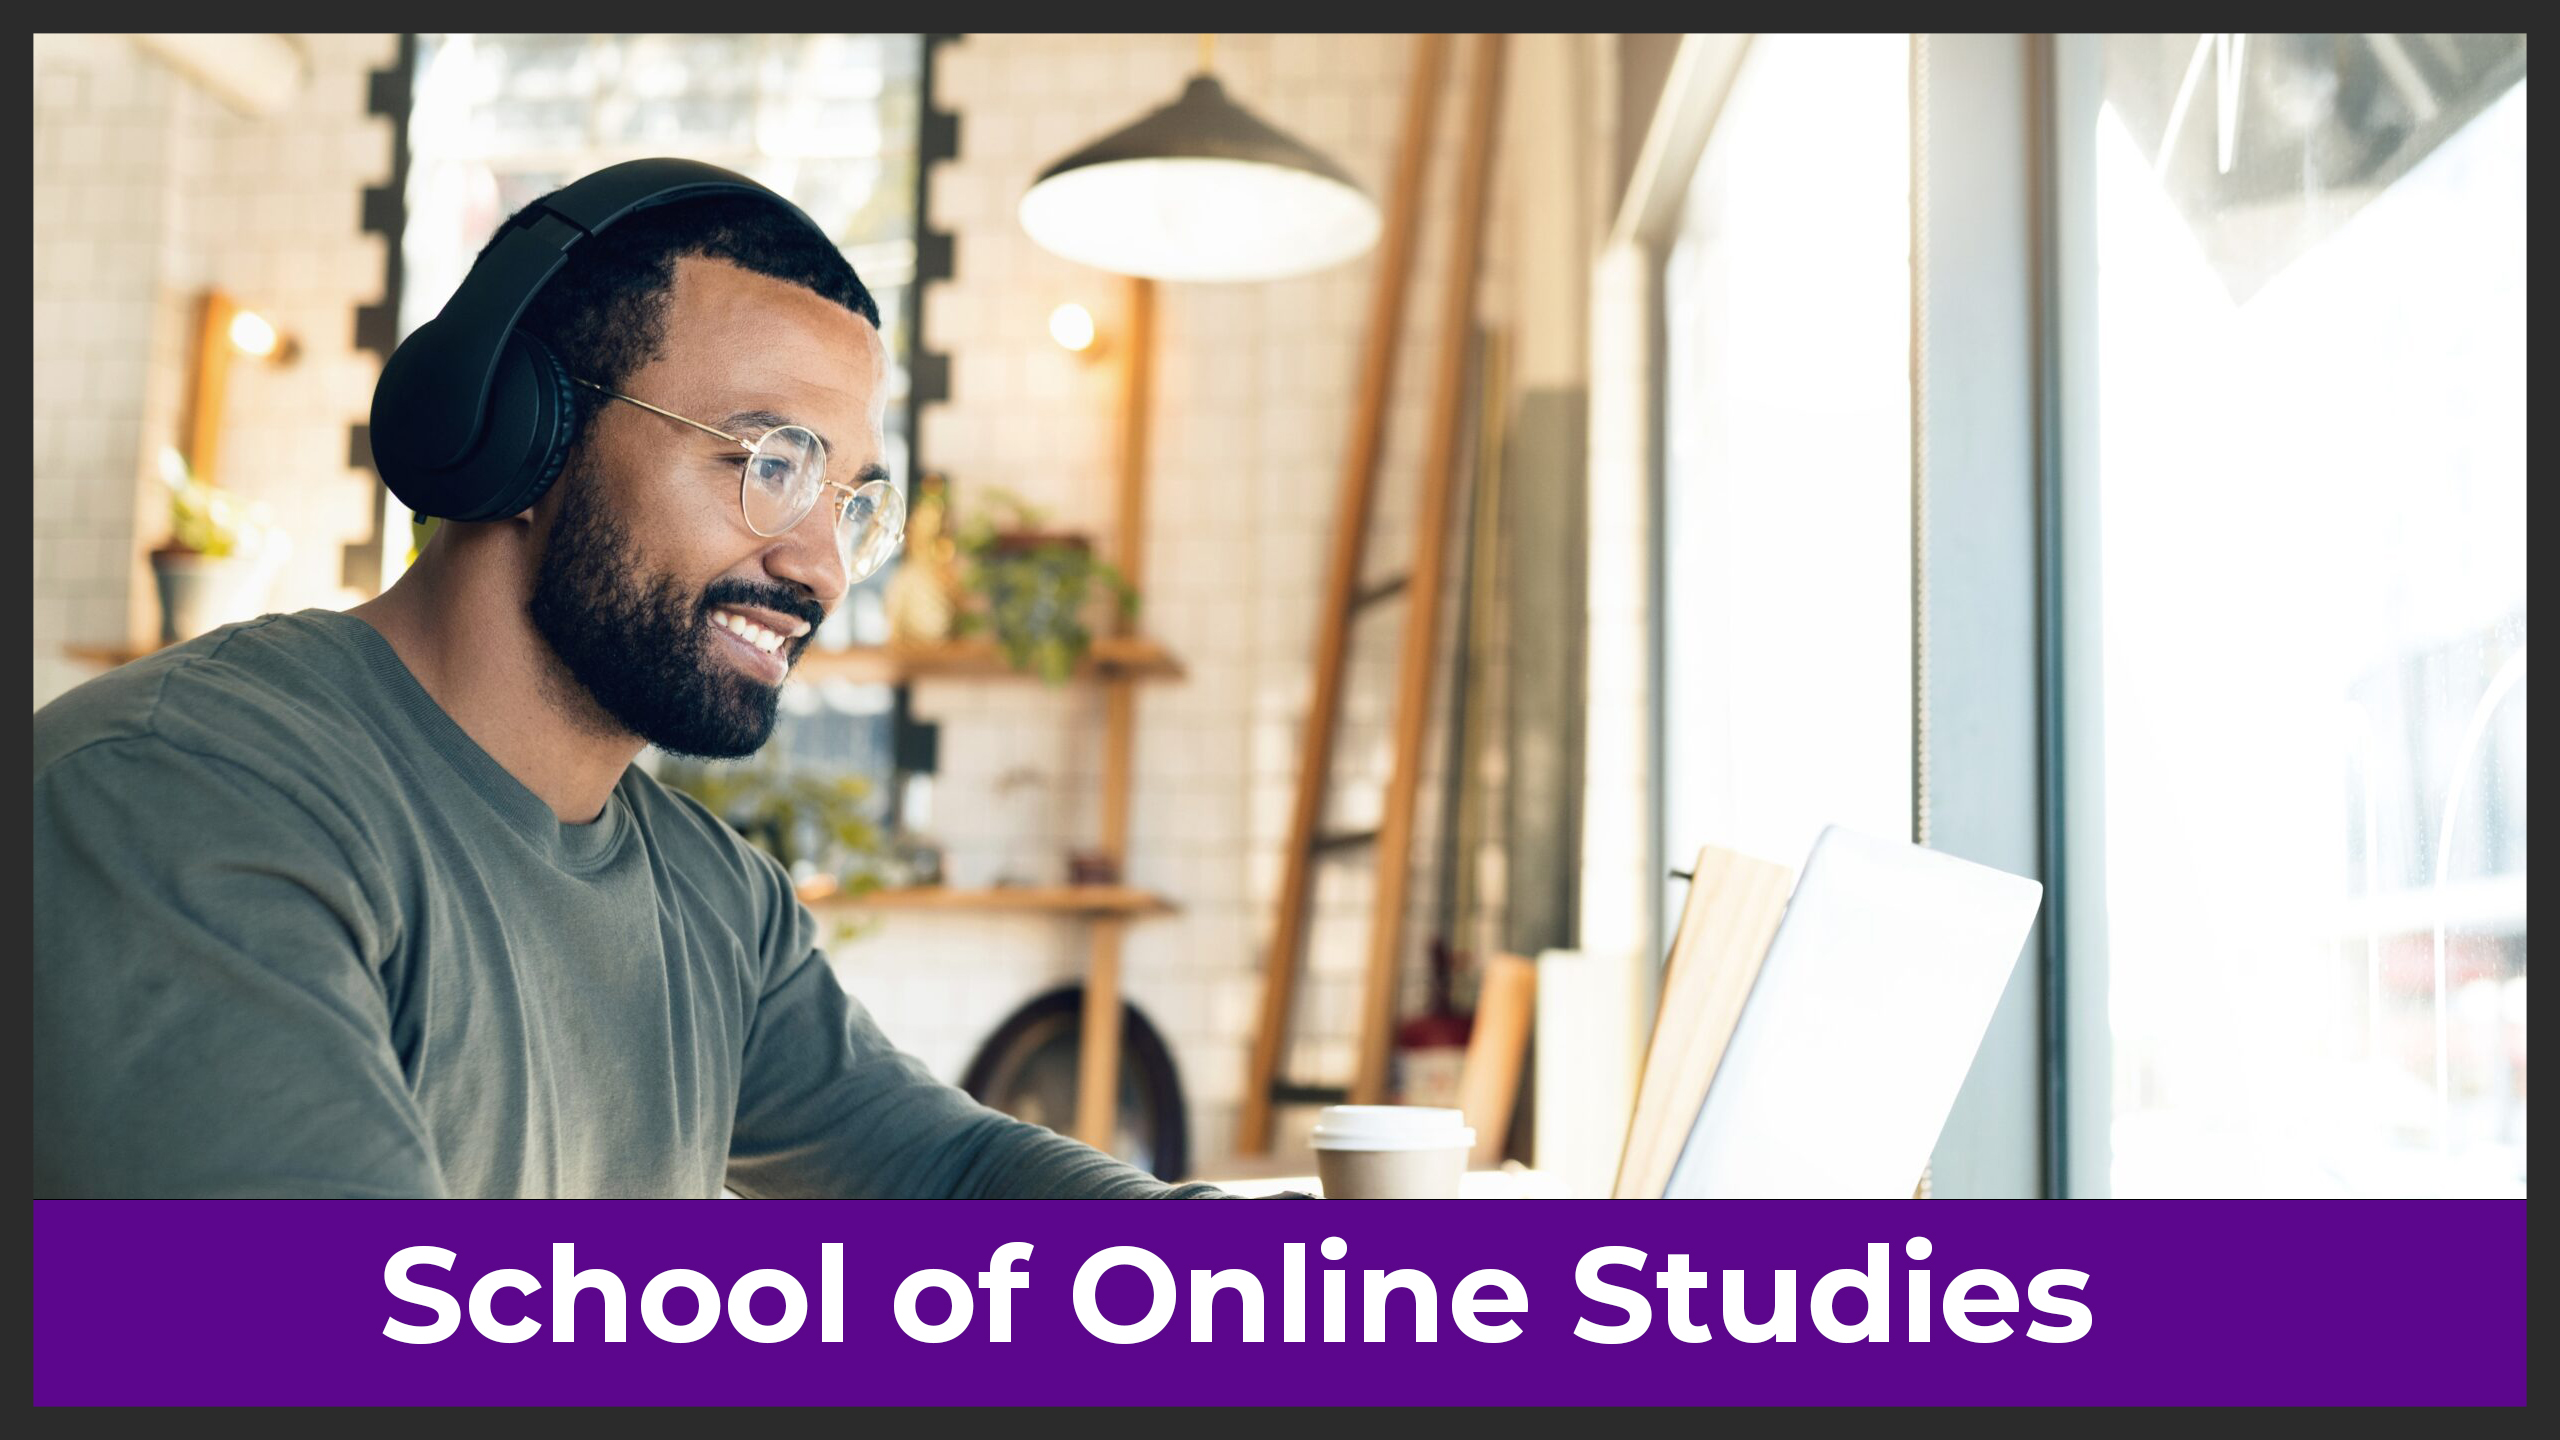 School of Online Studies